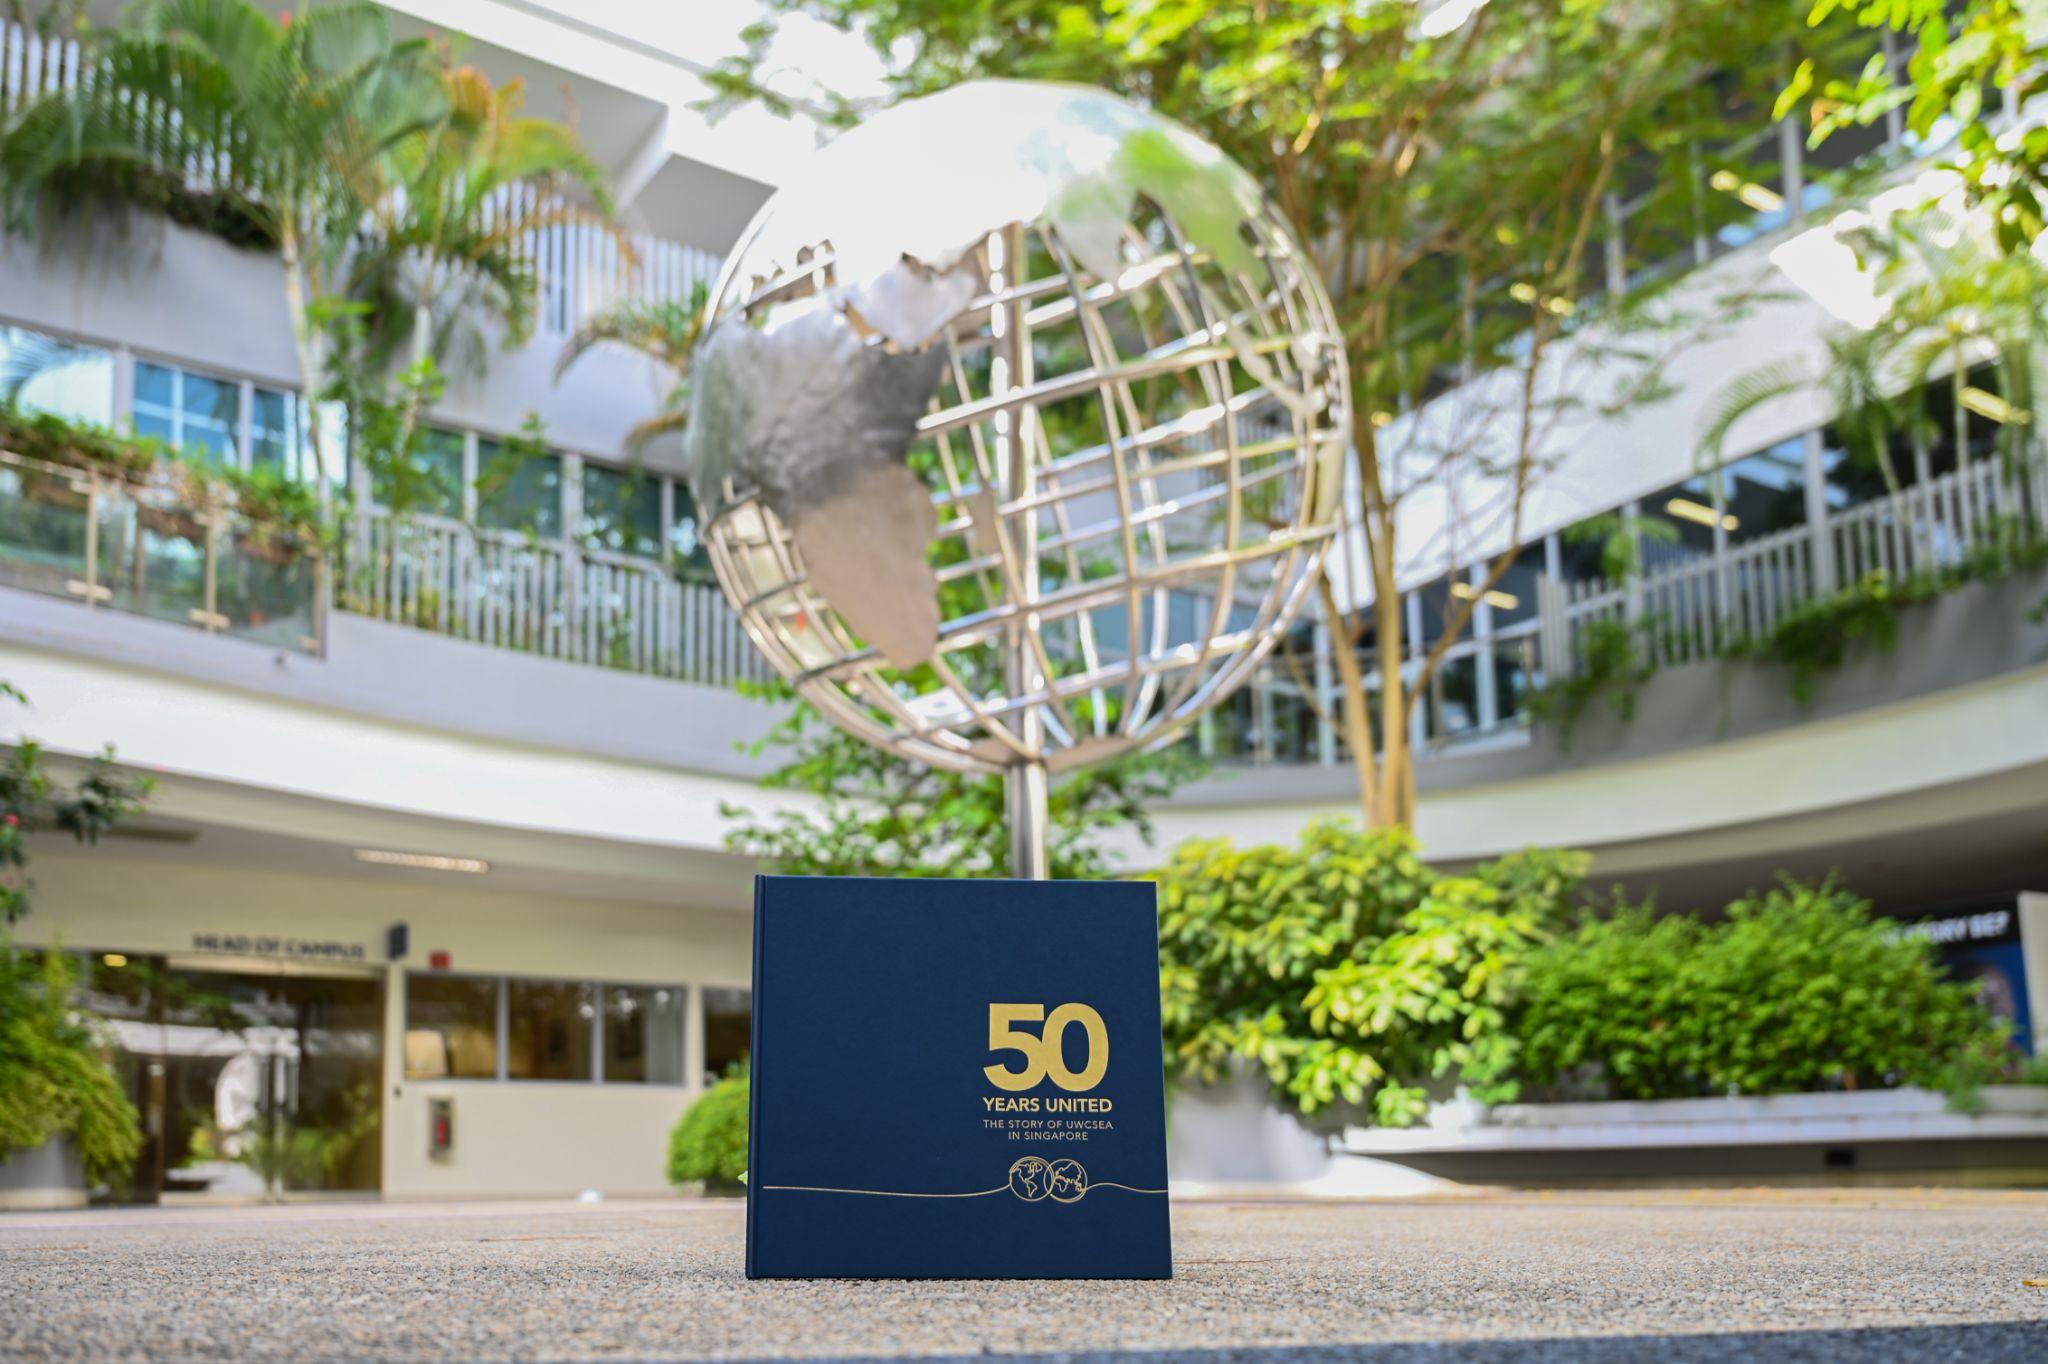 Singapore Celebrates 50 Years Of International Education With Milestone